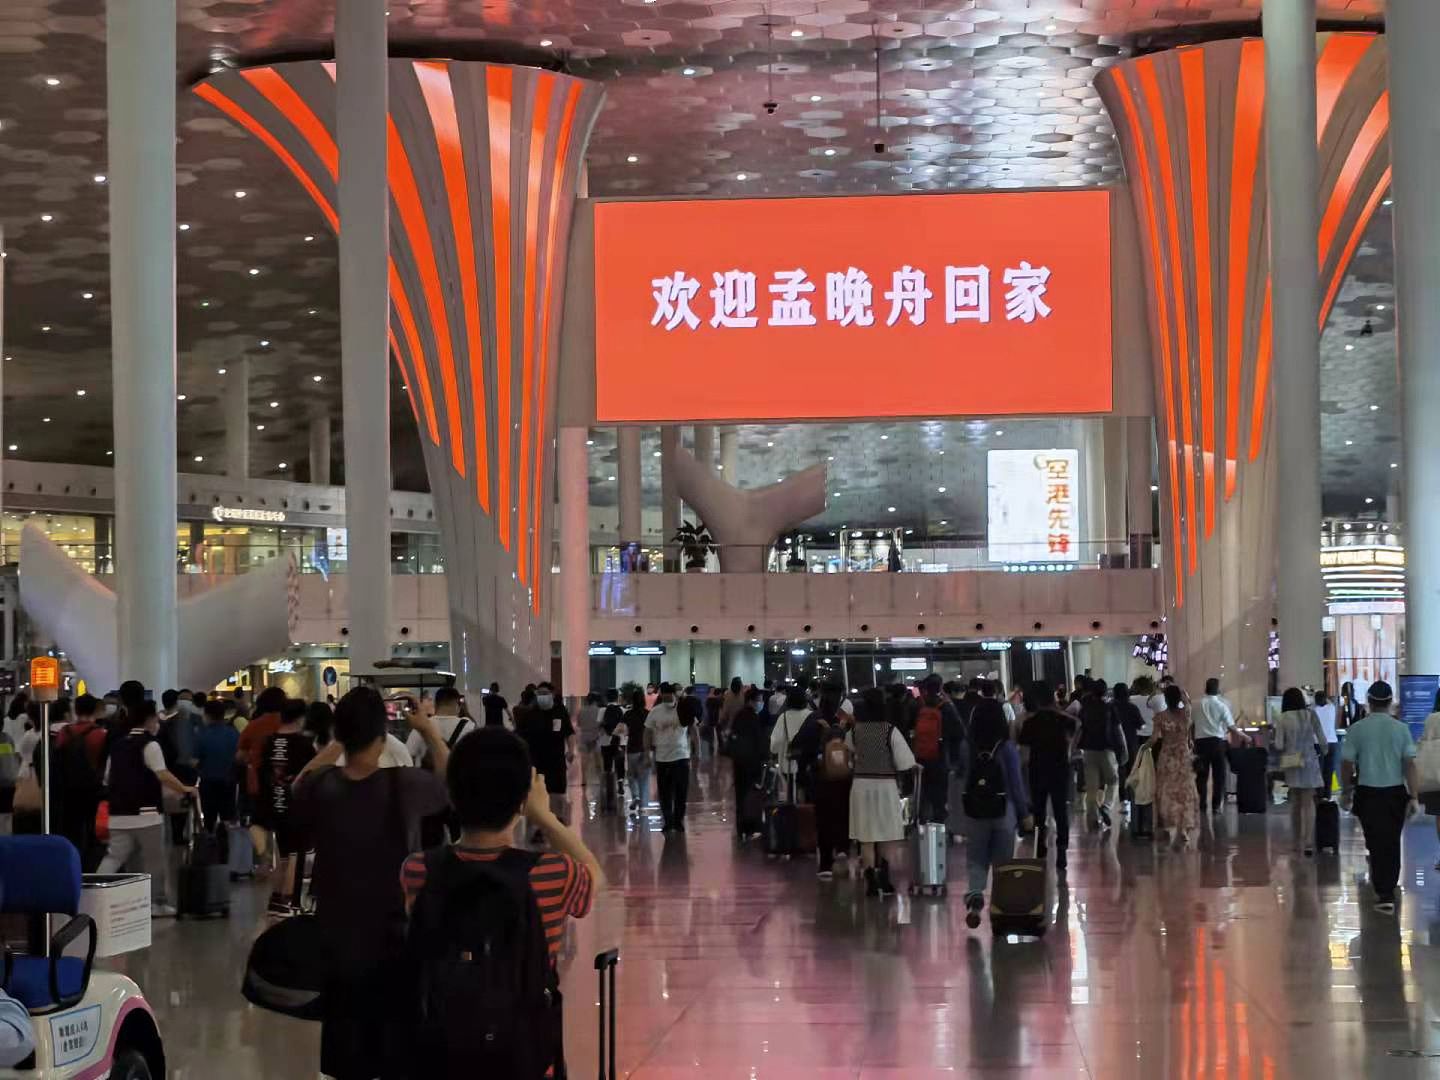 深圳宝安机场电子屏幕换上“欢迎孟晚舟回家”的大字。（多维新闻）